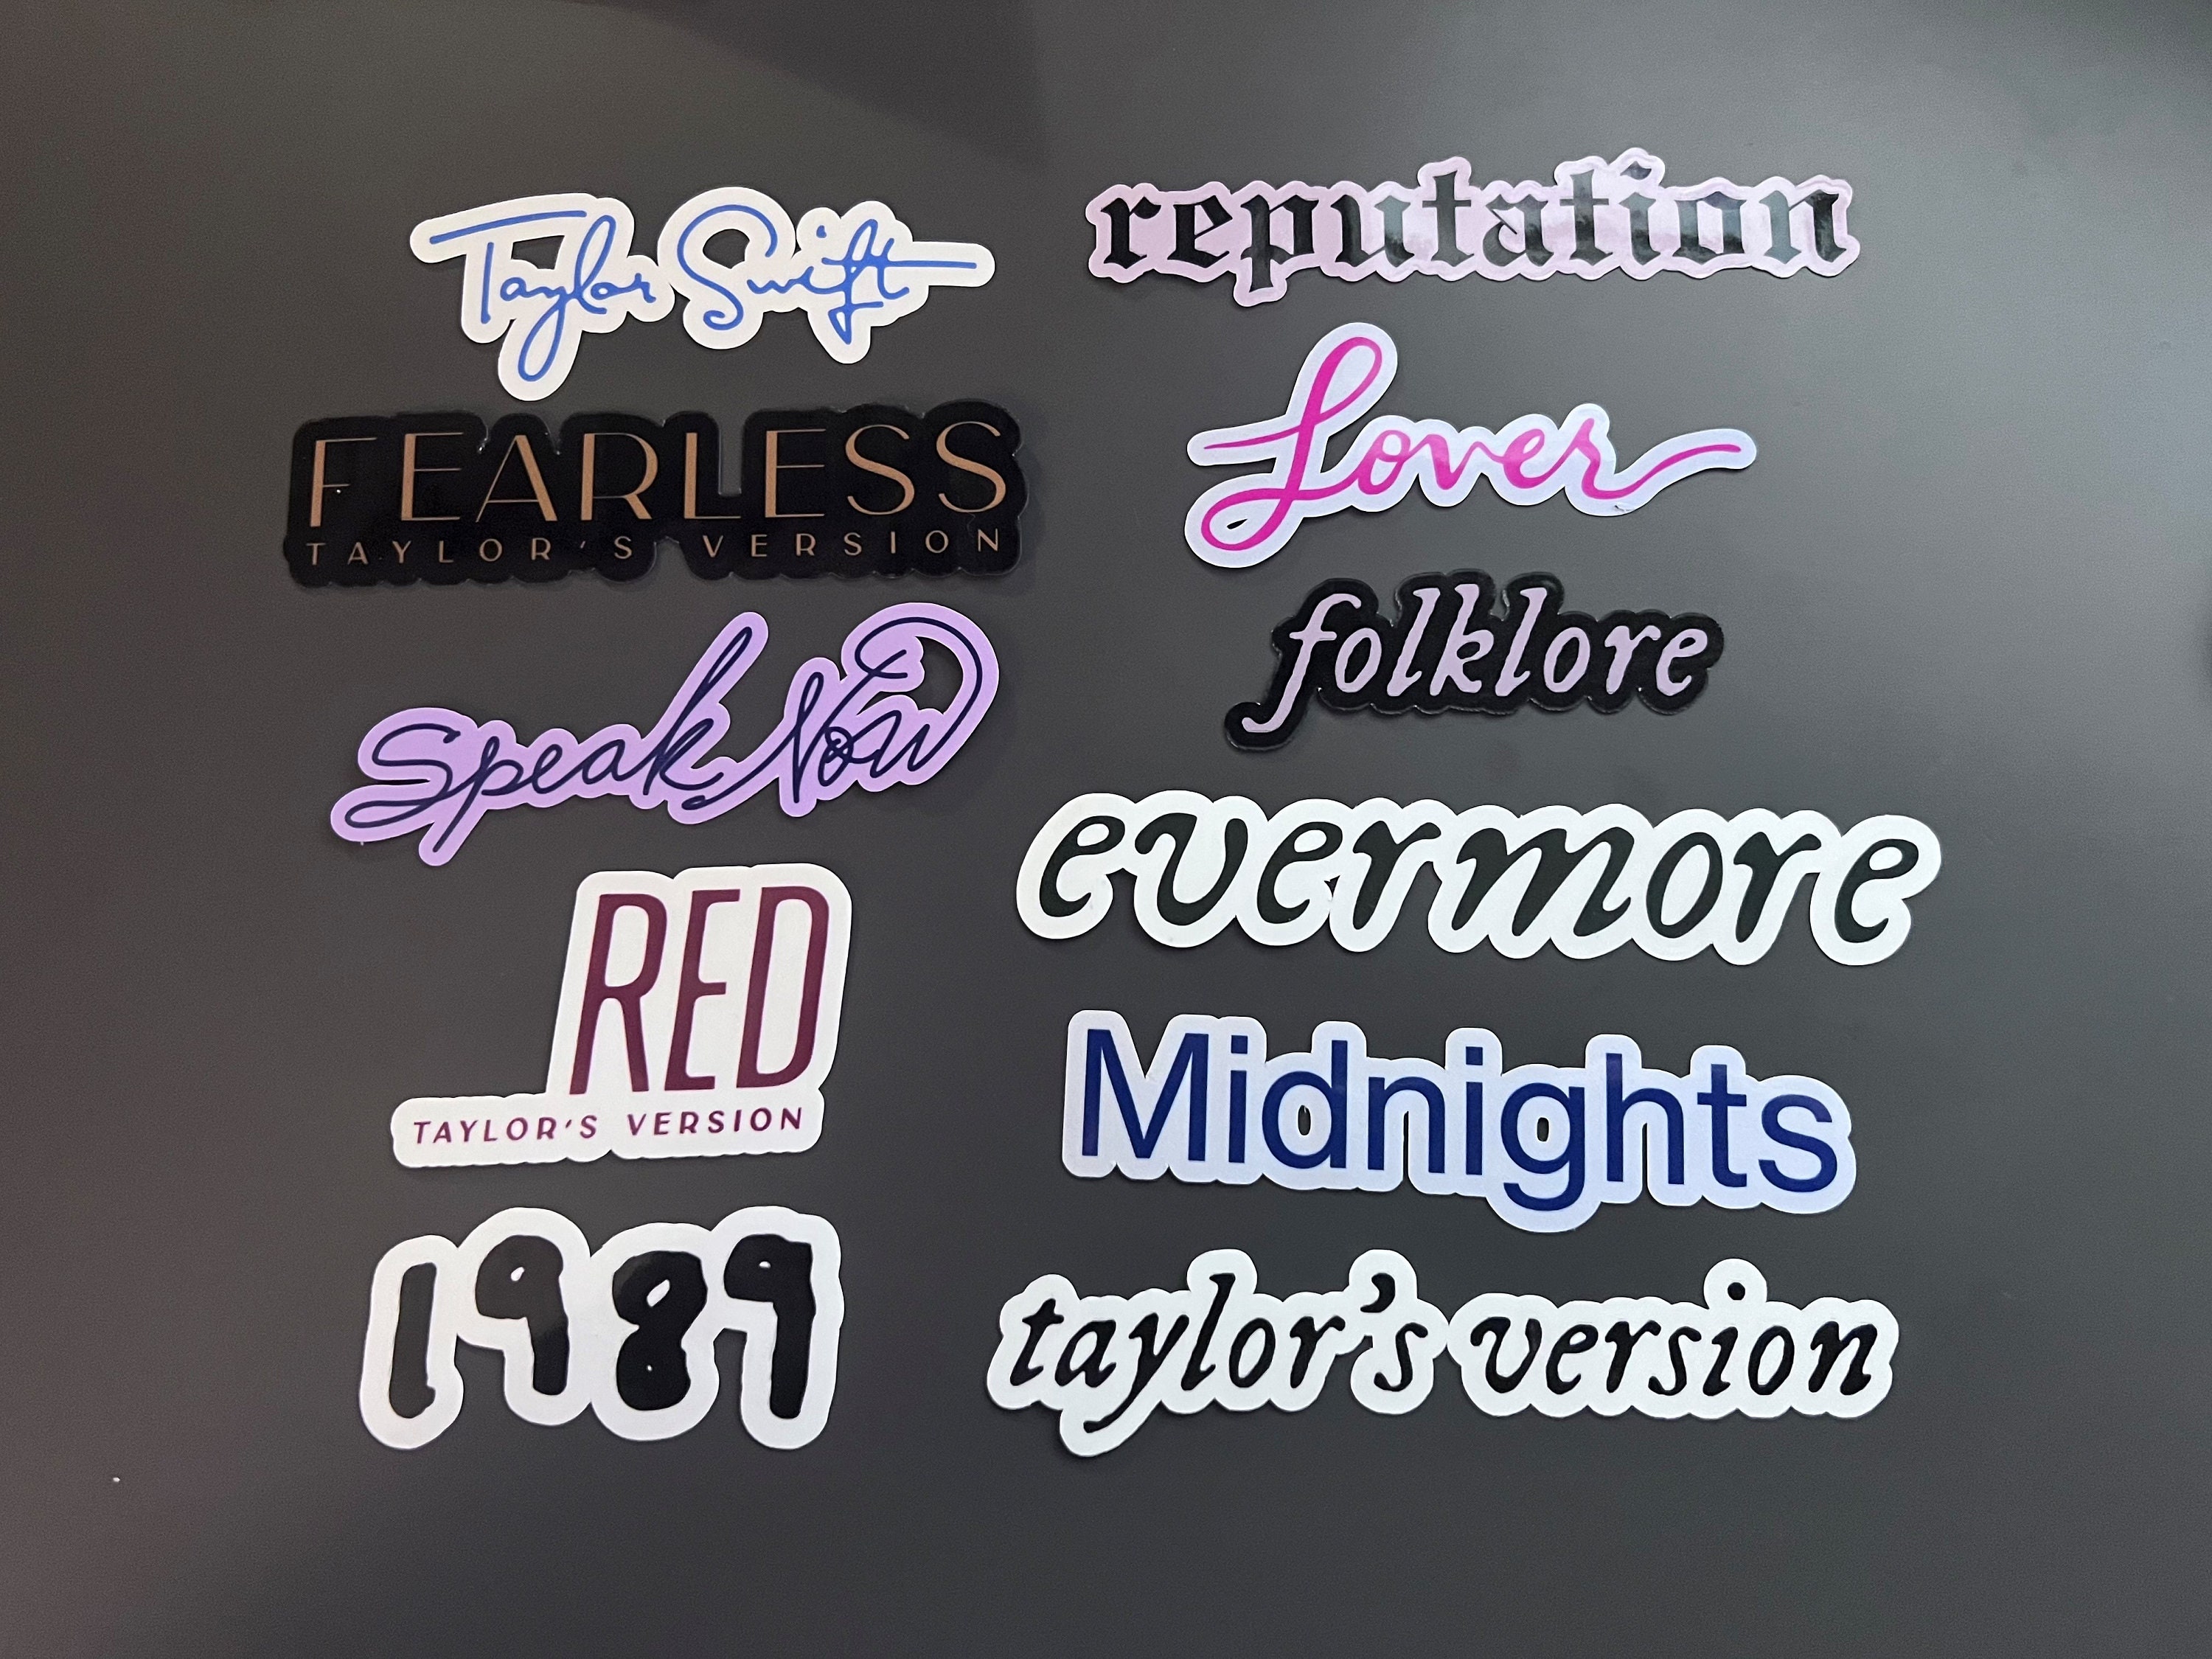 Taylor Swift Eras Tour sticker – Del Bravo Record Shop